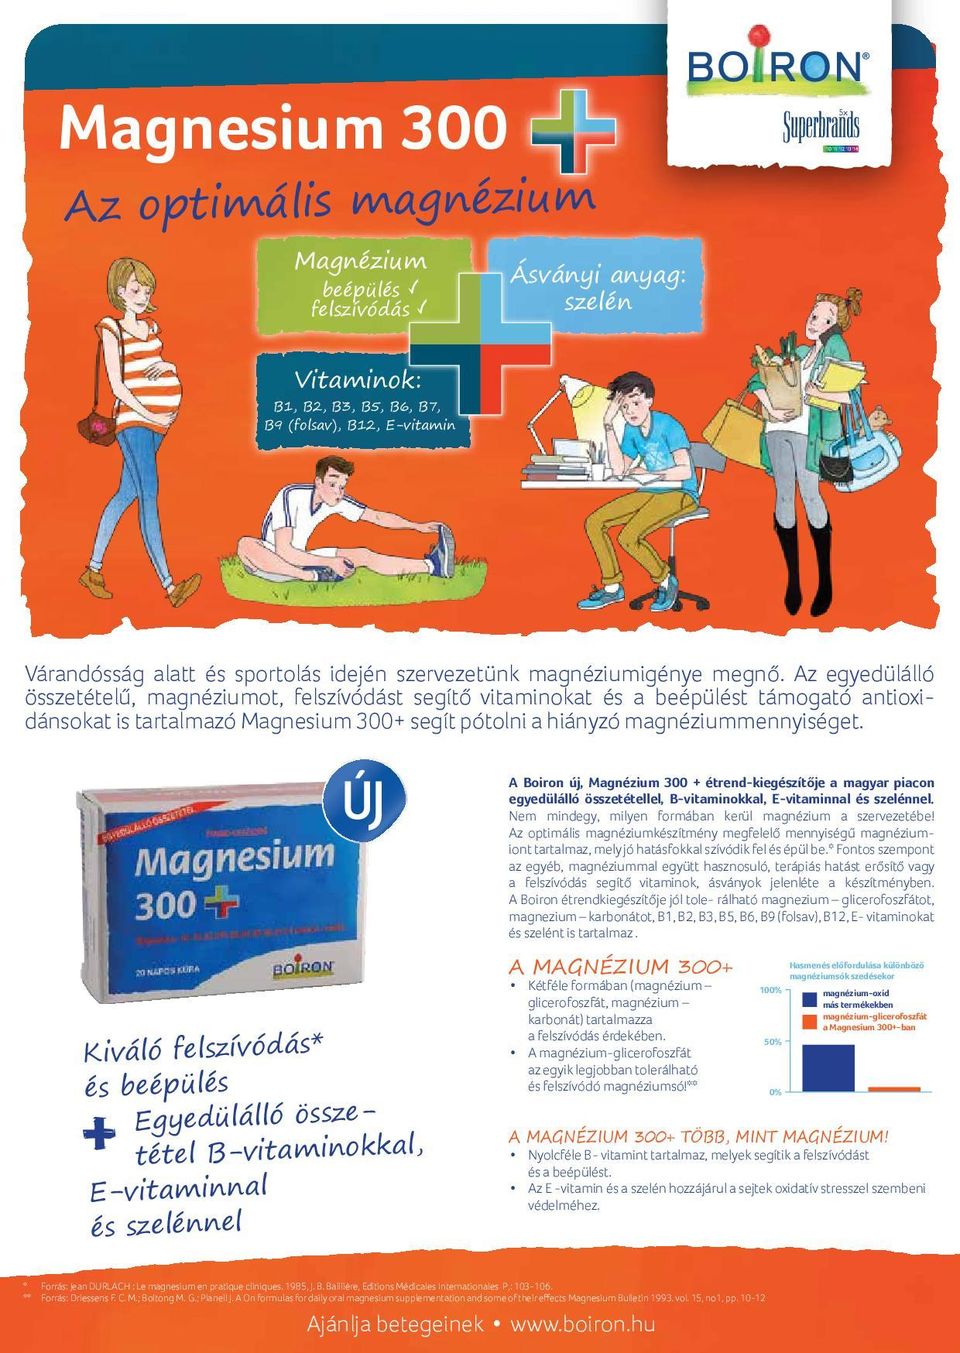 Az egyedülálló összetételű, magnéziumot, felszívódást segítő vitaminokat és a beépülést támogató antioxidánsokat is tartalmazó Magnesium 300+ segít pótolni a hiányzó magnéziummennyiséget.